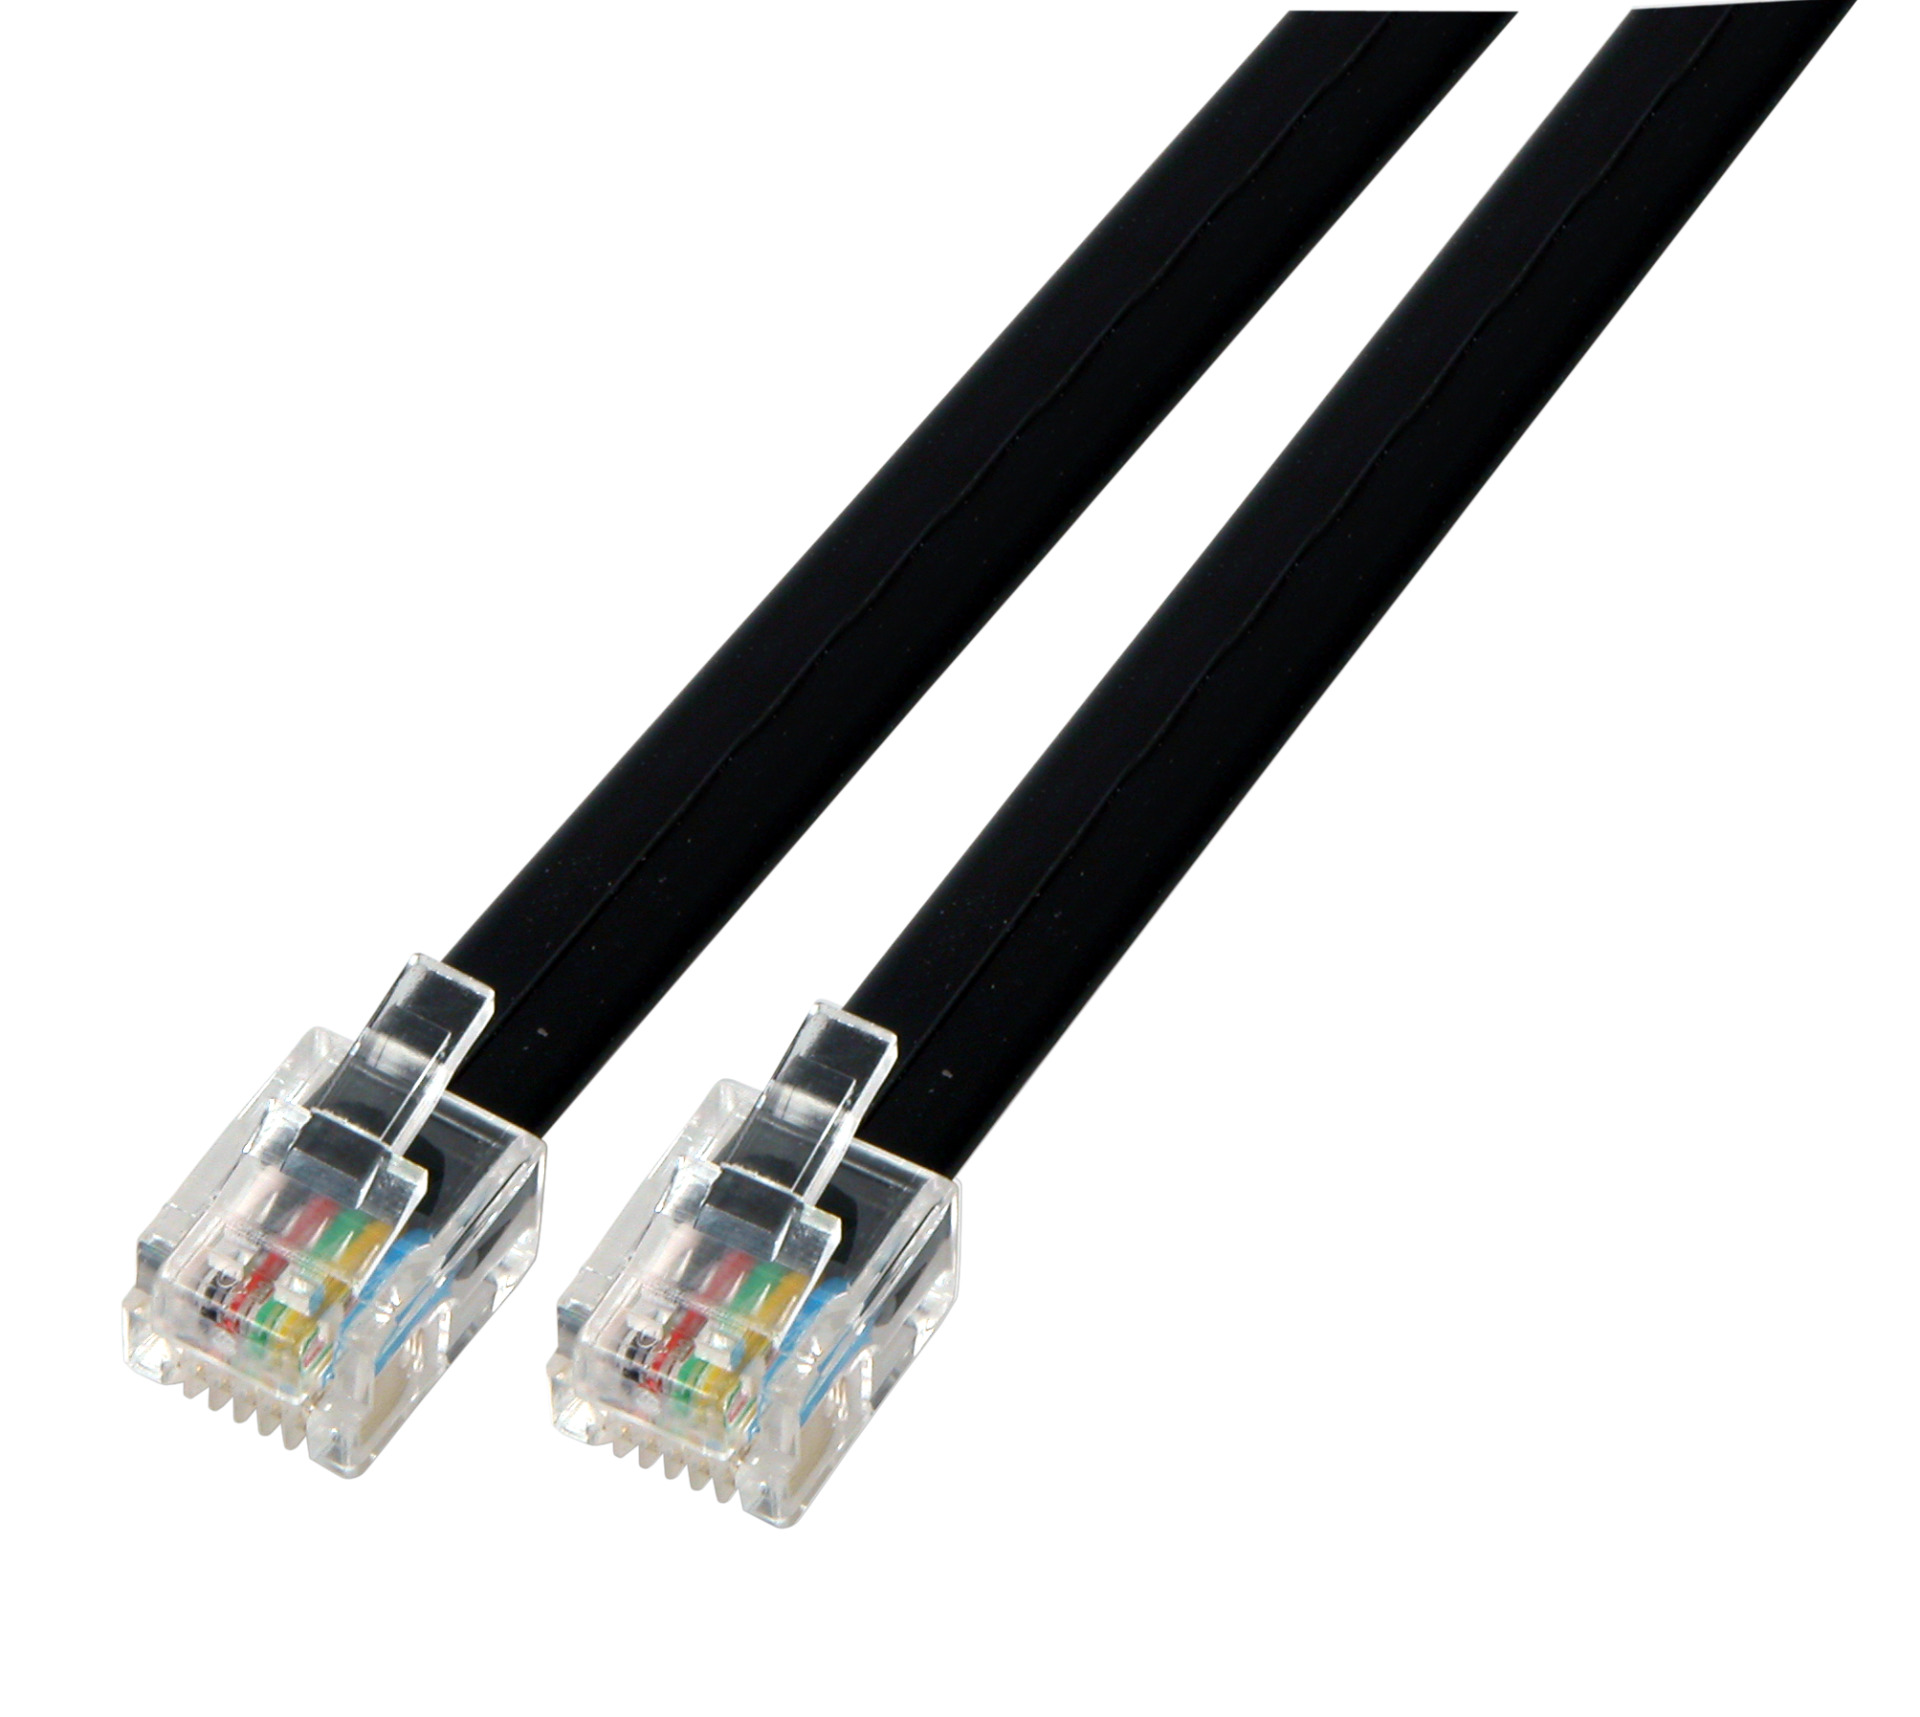 Modular cable black 2 x RJ11 (6/4) Plug, 1:1, 0,5m